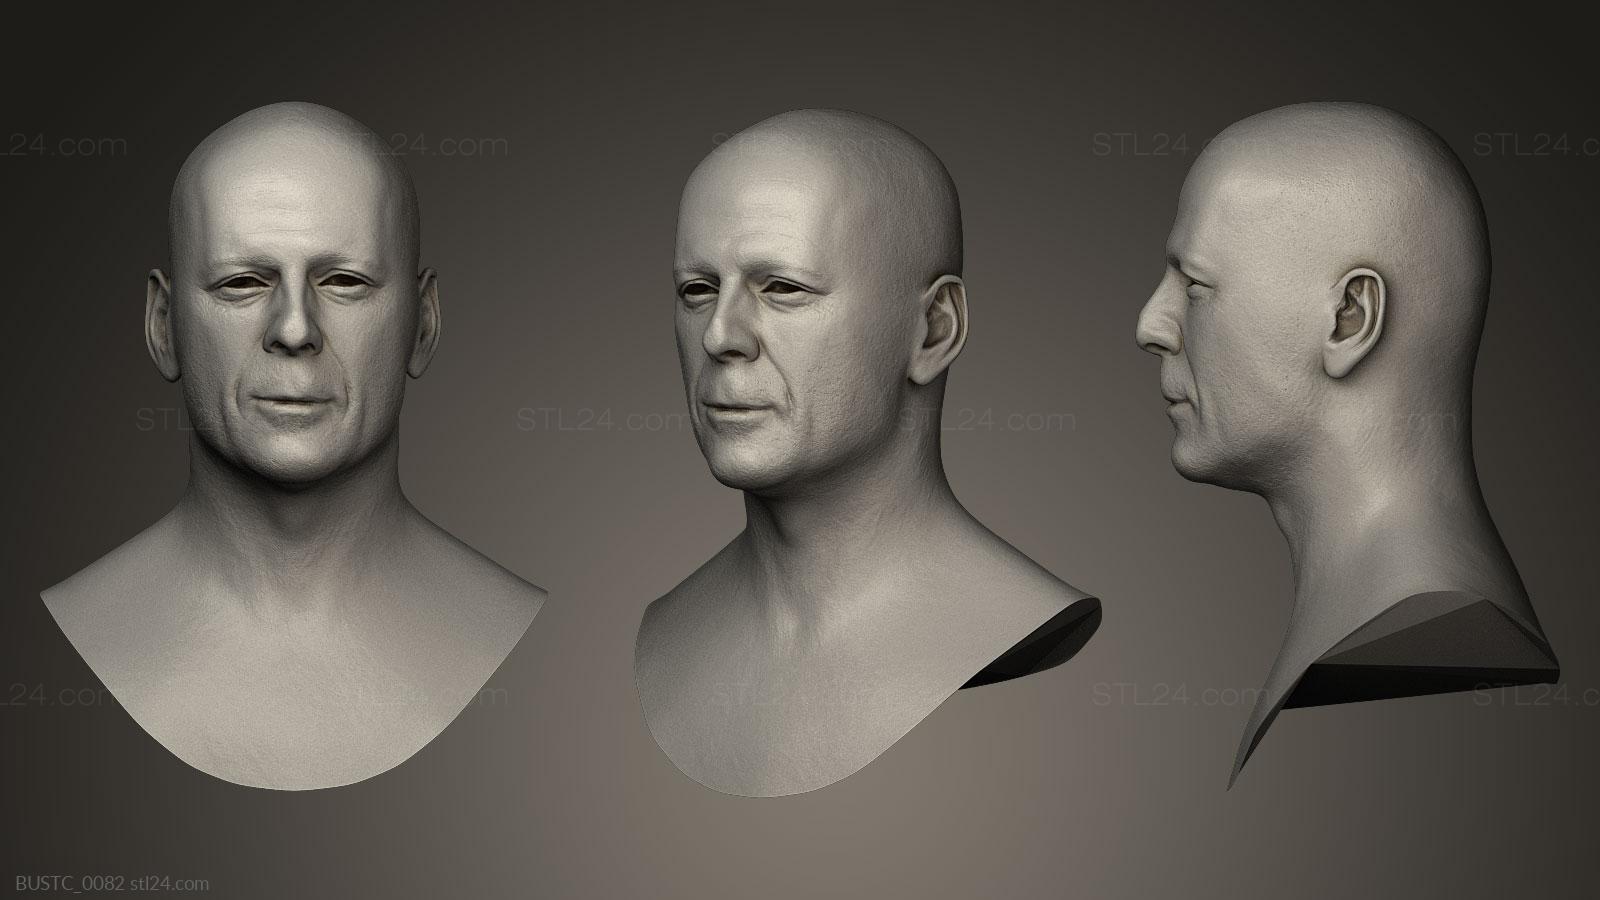 Бюсты и барельефы известных личностей (Брюс Уиллис, BUSTC_0082) 3D модель для ЧПУ станка